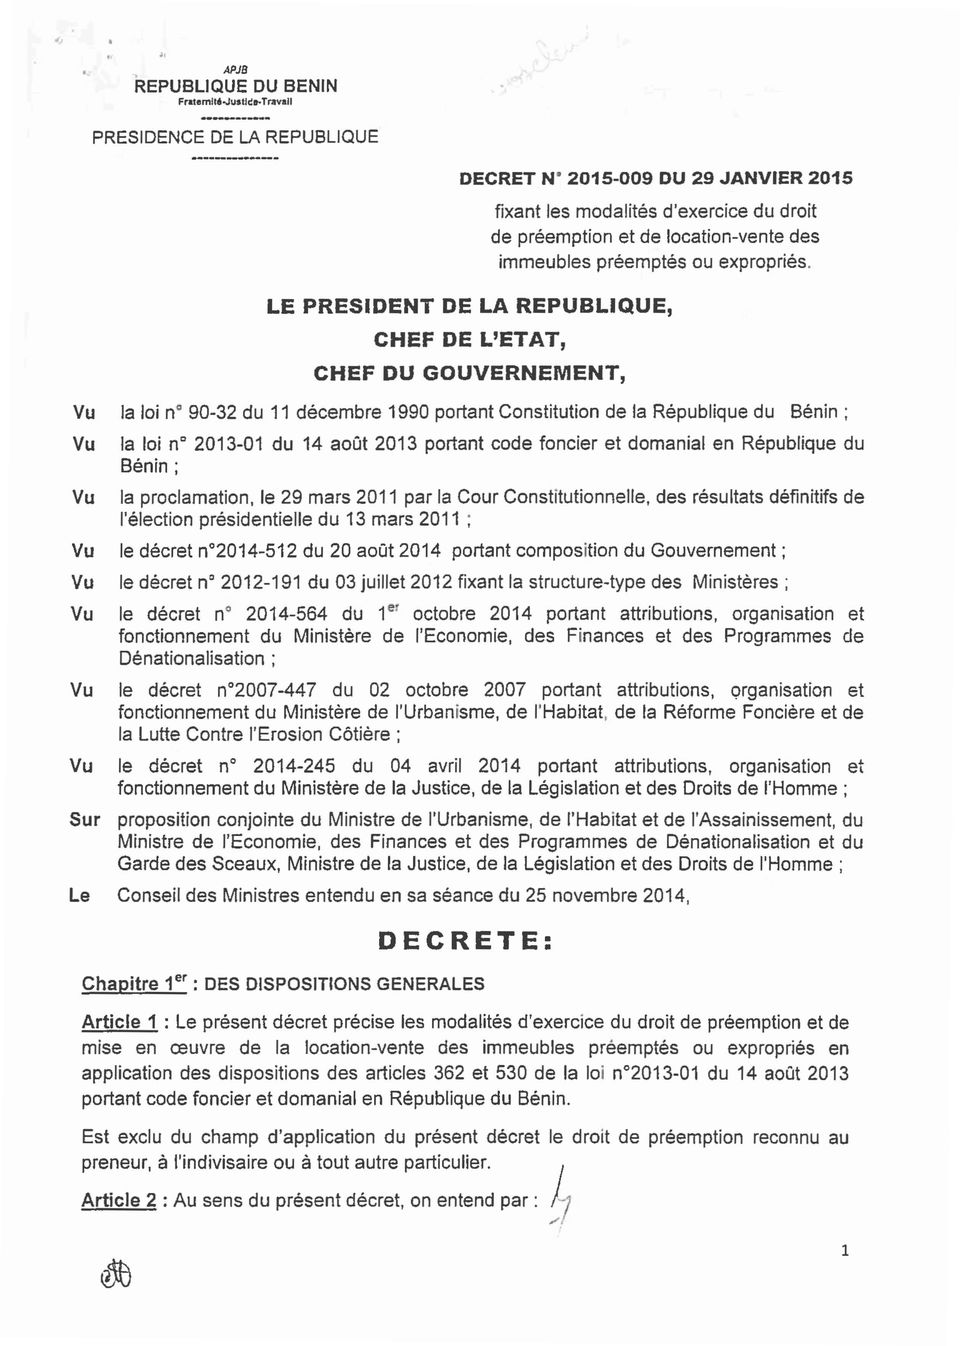 LE PRESIDENT DE LA REPUBLIQUE, CHEF DE L'ETAT, CHEF DU GOUVERNEMENT, la loi n 90-32 du 11 décembre 1990 portant Constitution de la République du Bénin; la loi n" 2013-01 du 14 août 2013 portant code